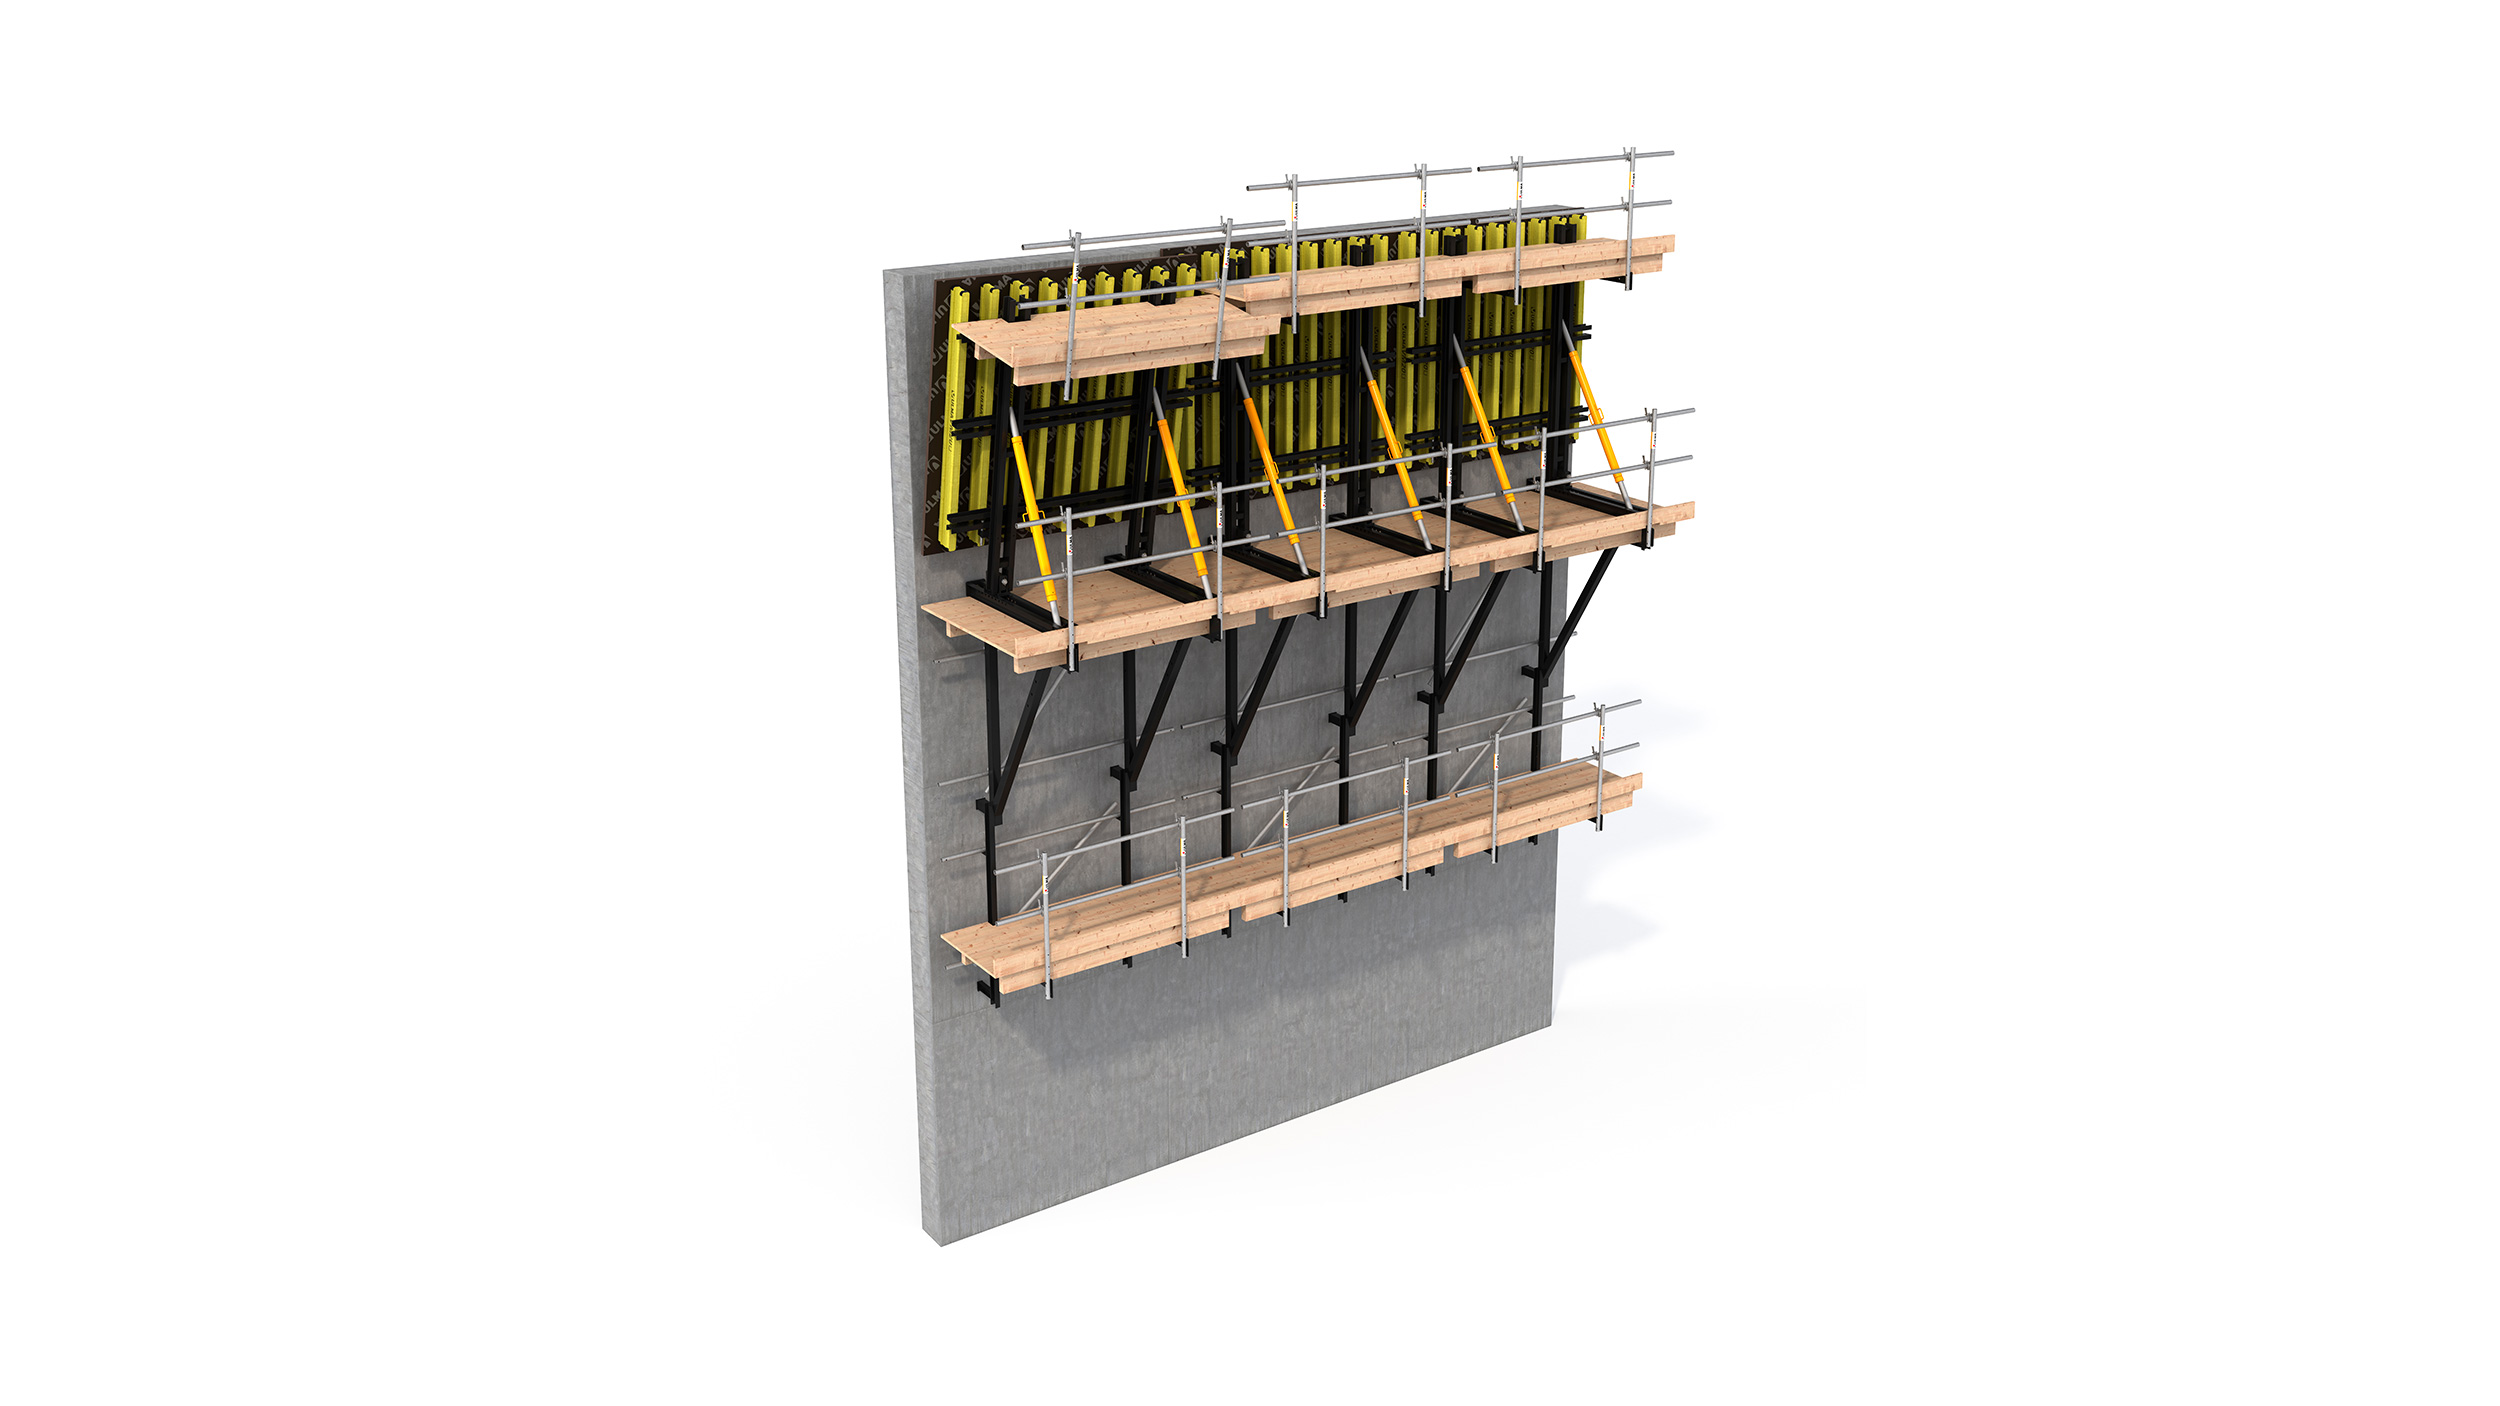 Sistema de encofrado trepante configurable para muros rectos o inclinados. Indicado para la construcción de presas, esclusas o galerías.